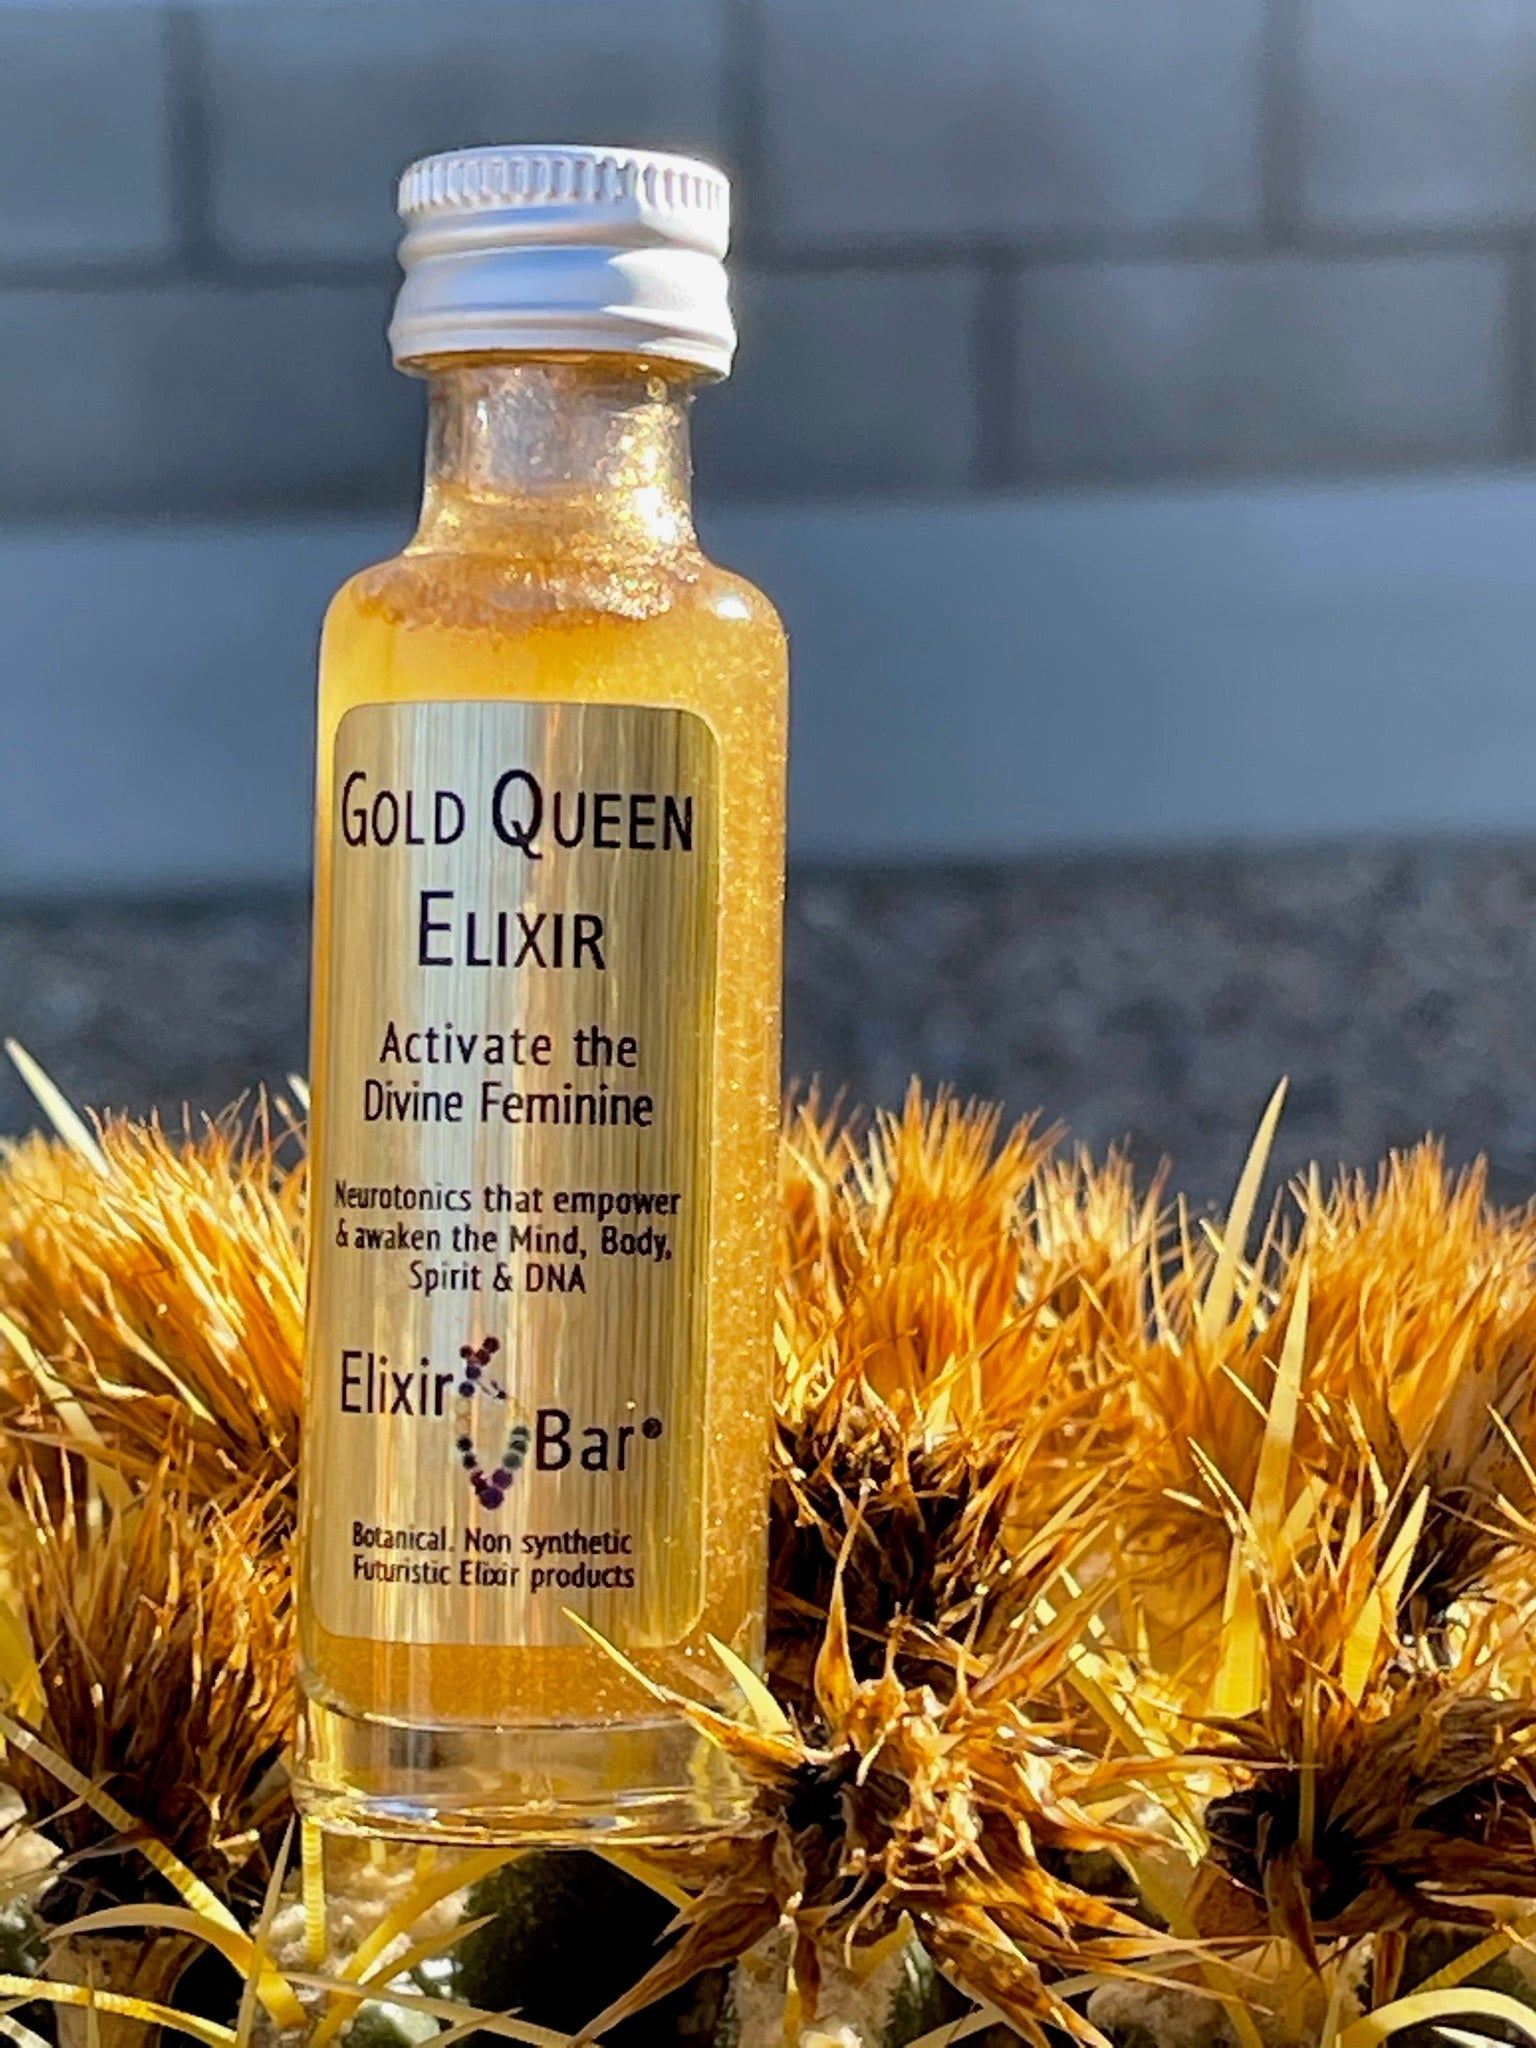 24K 'Gold Queen Elixir XL (5-Pack)